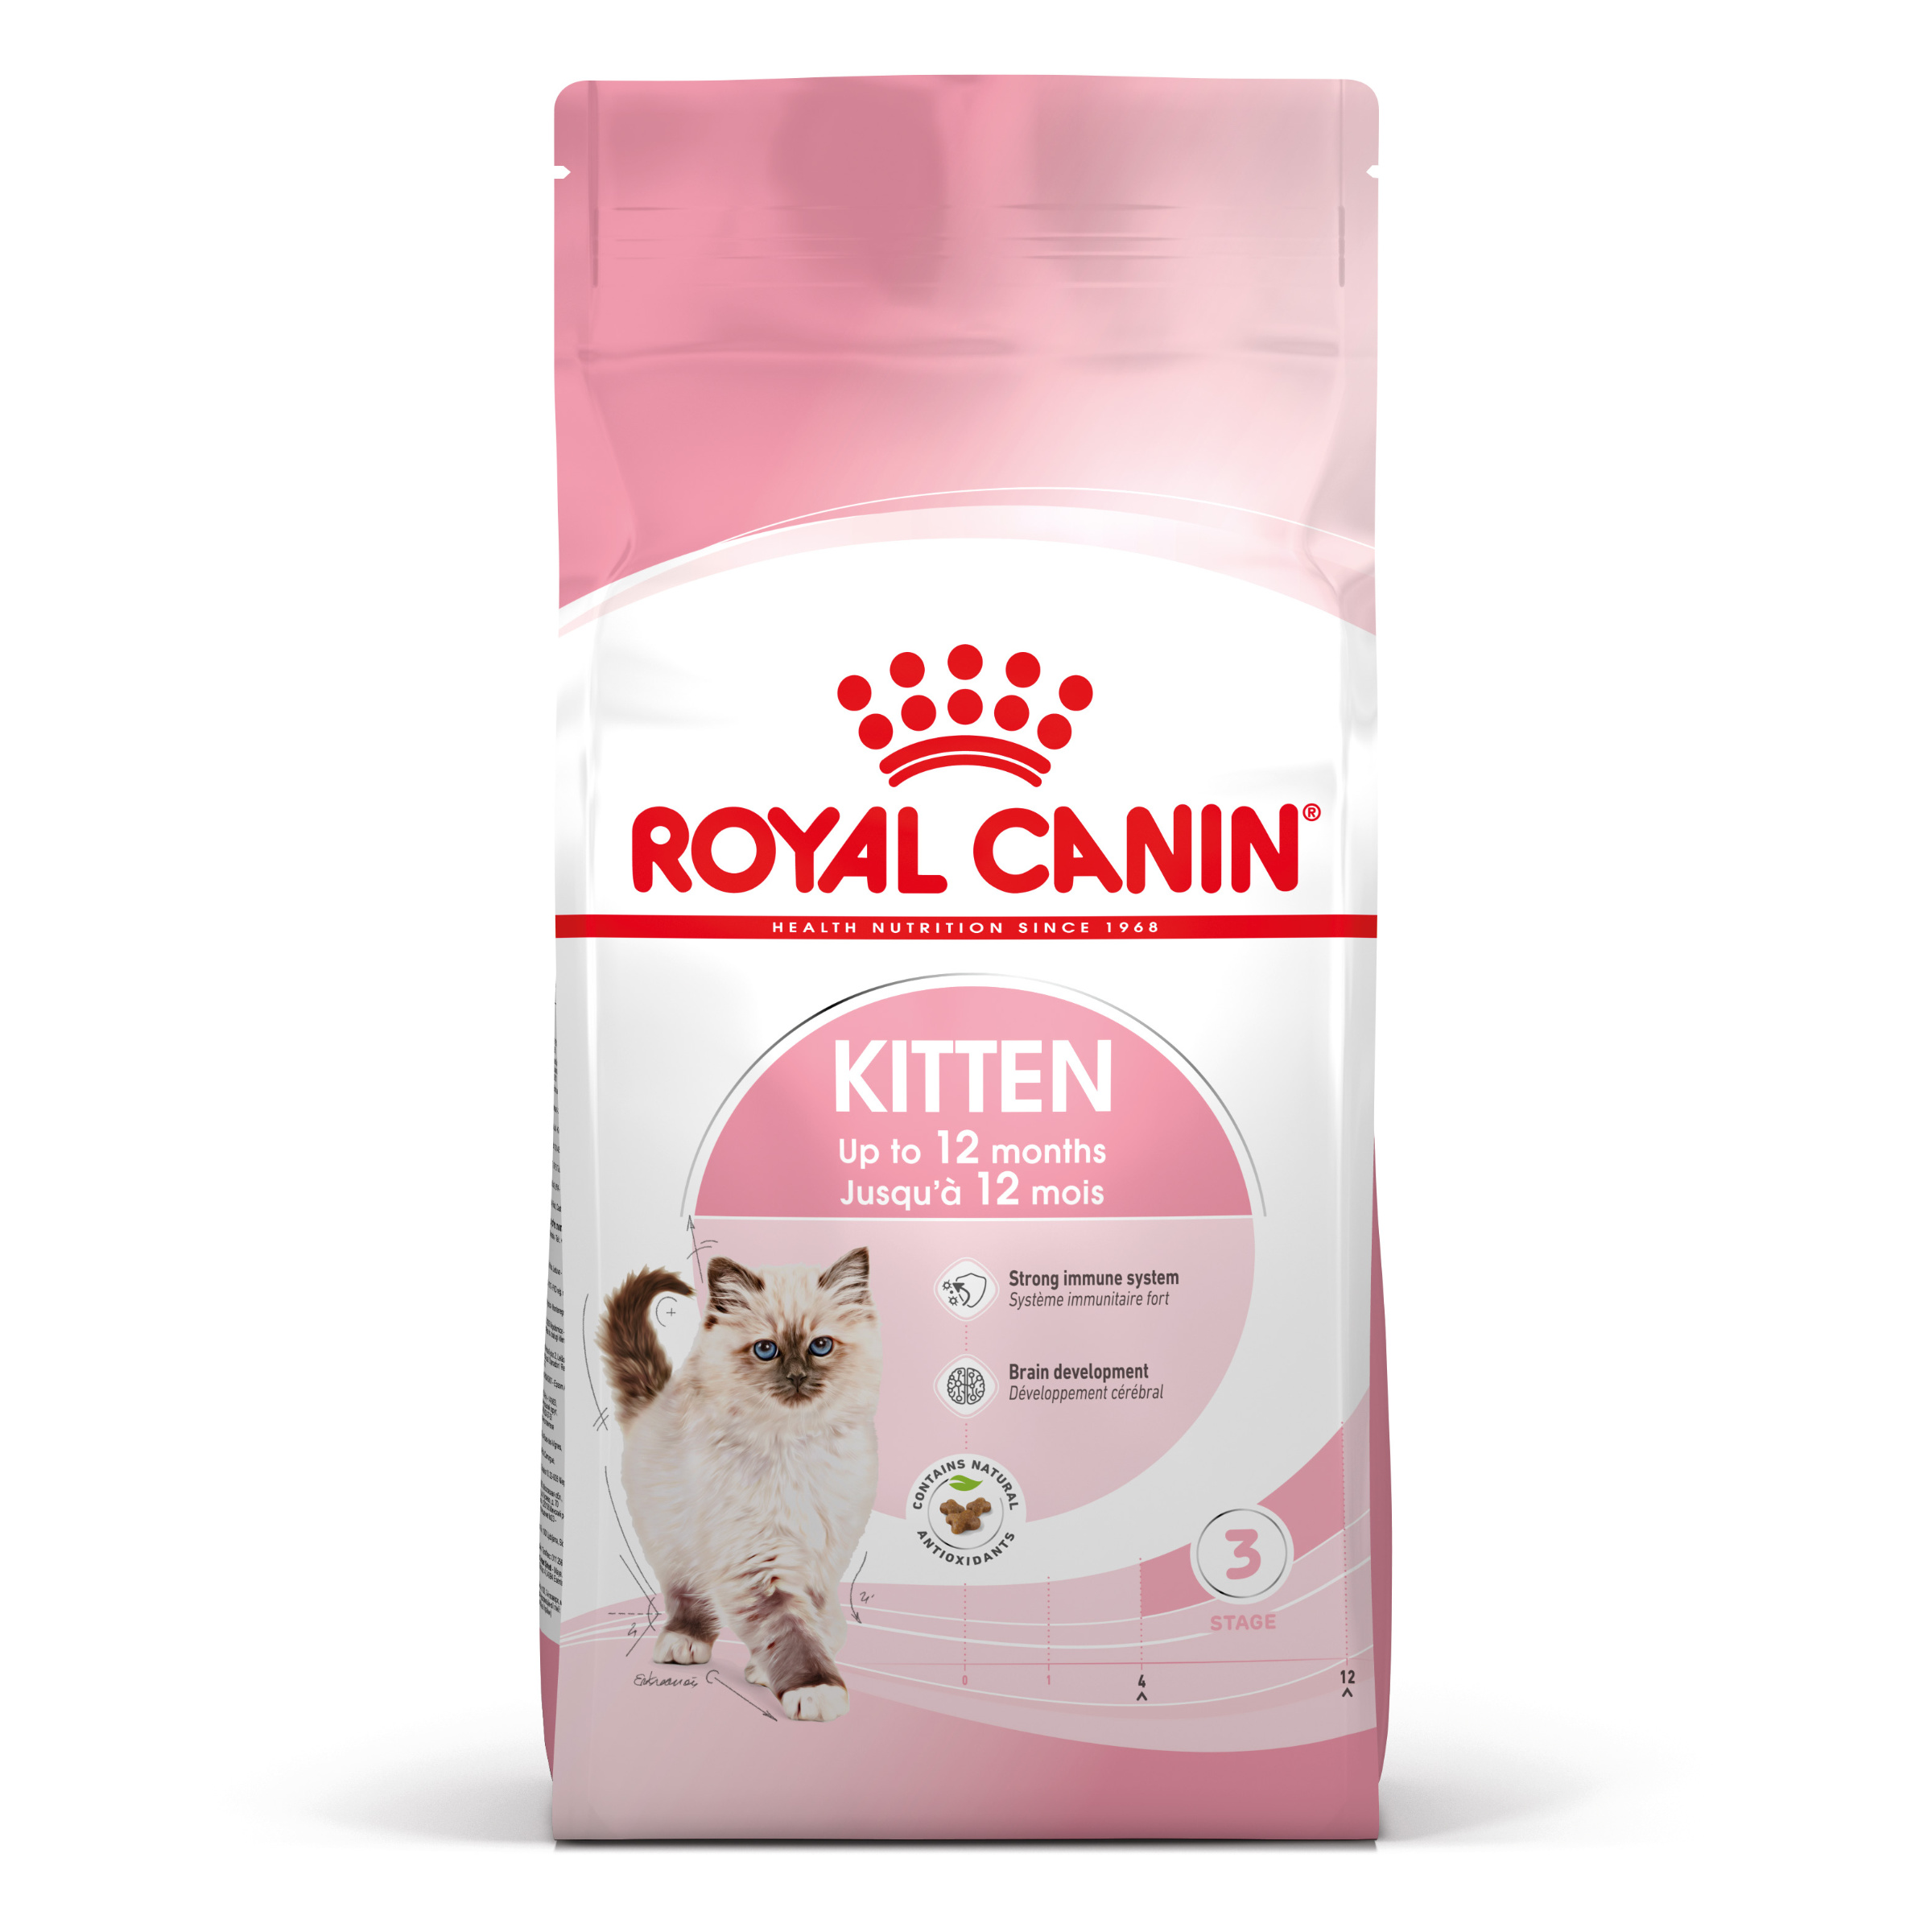 Royal Canin Kitten - Kattenvoer voor kittens in de tweede groeifase (tot 12 maanden) - 2kg